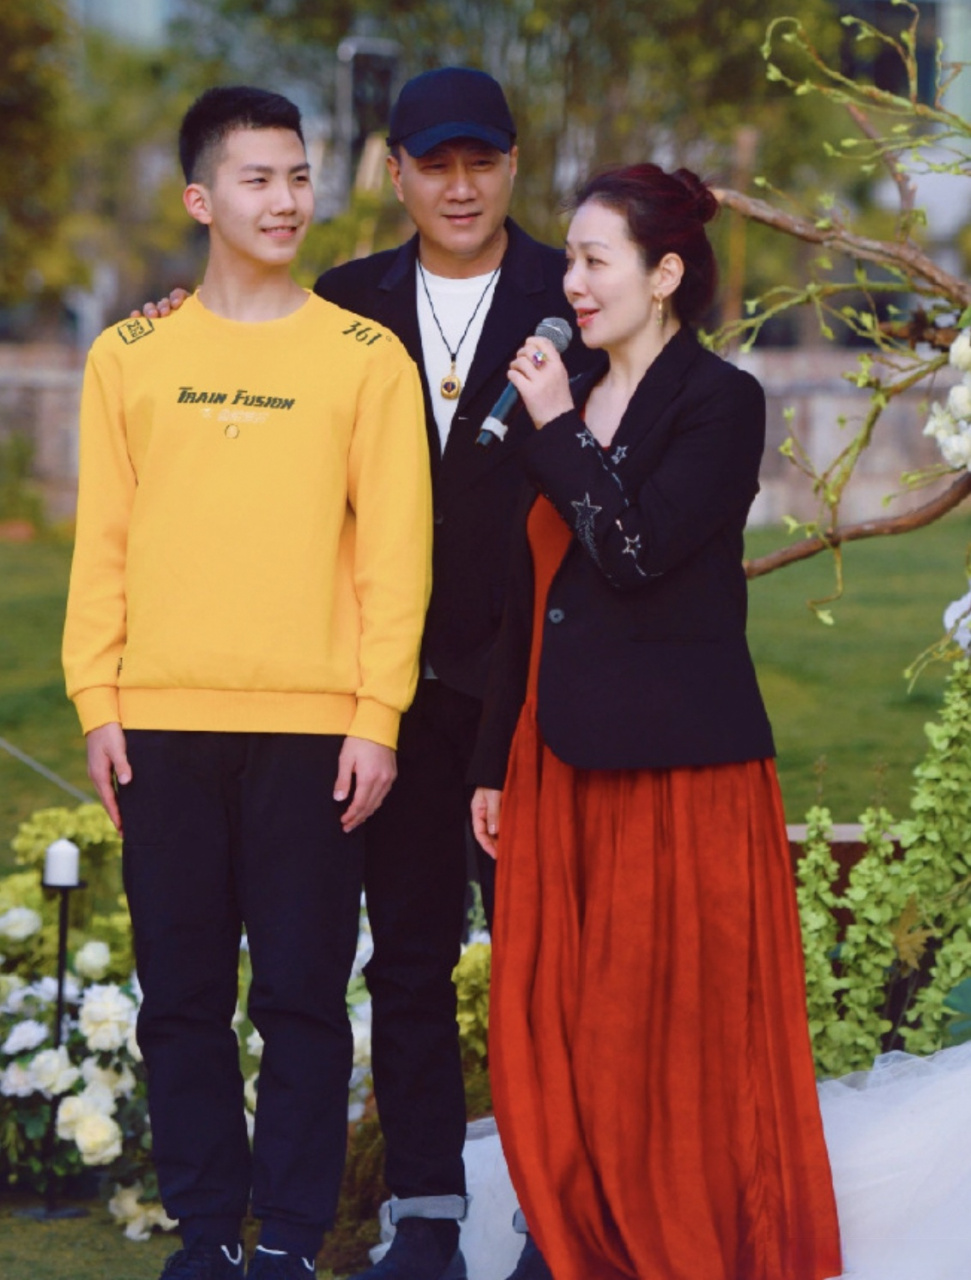 近日,@胡军 带着老婆与儿子参加朋友的婚礼